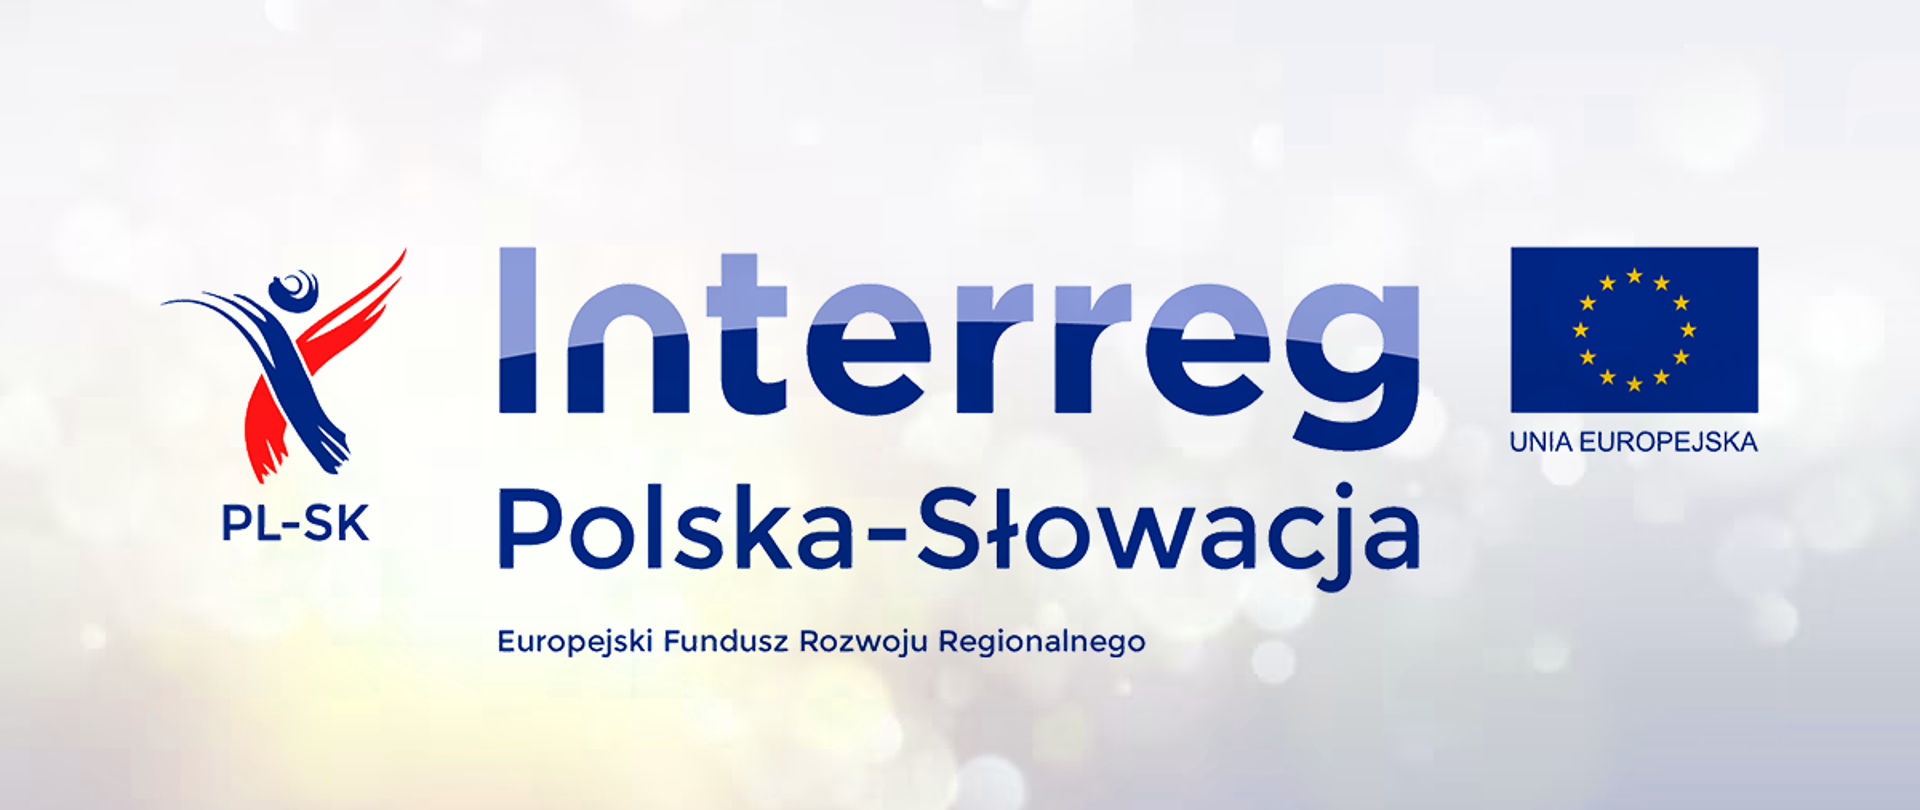 Grafika z napisem Interreg Polska-Słowacja, Europejski Fundusz Rozwoju Regionalnego, po prawej stronie flaga UE